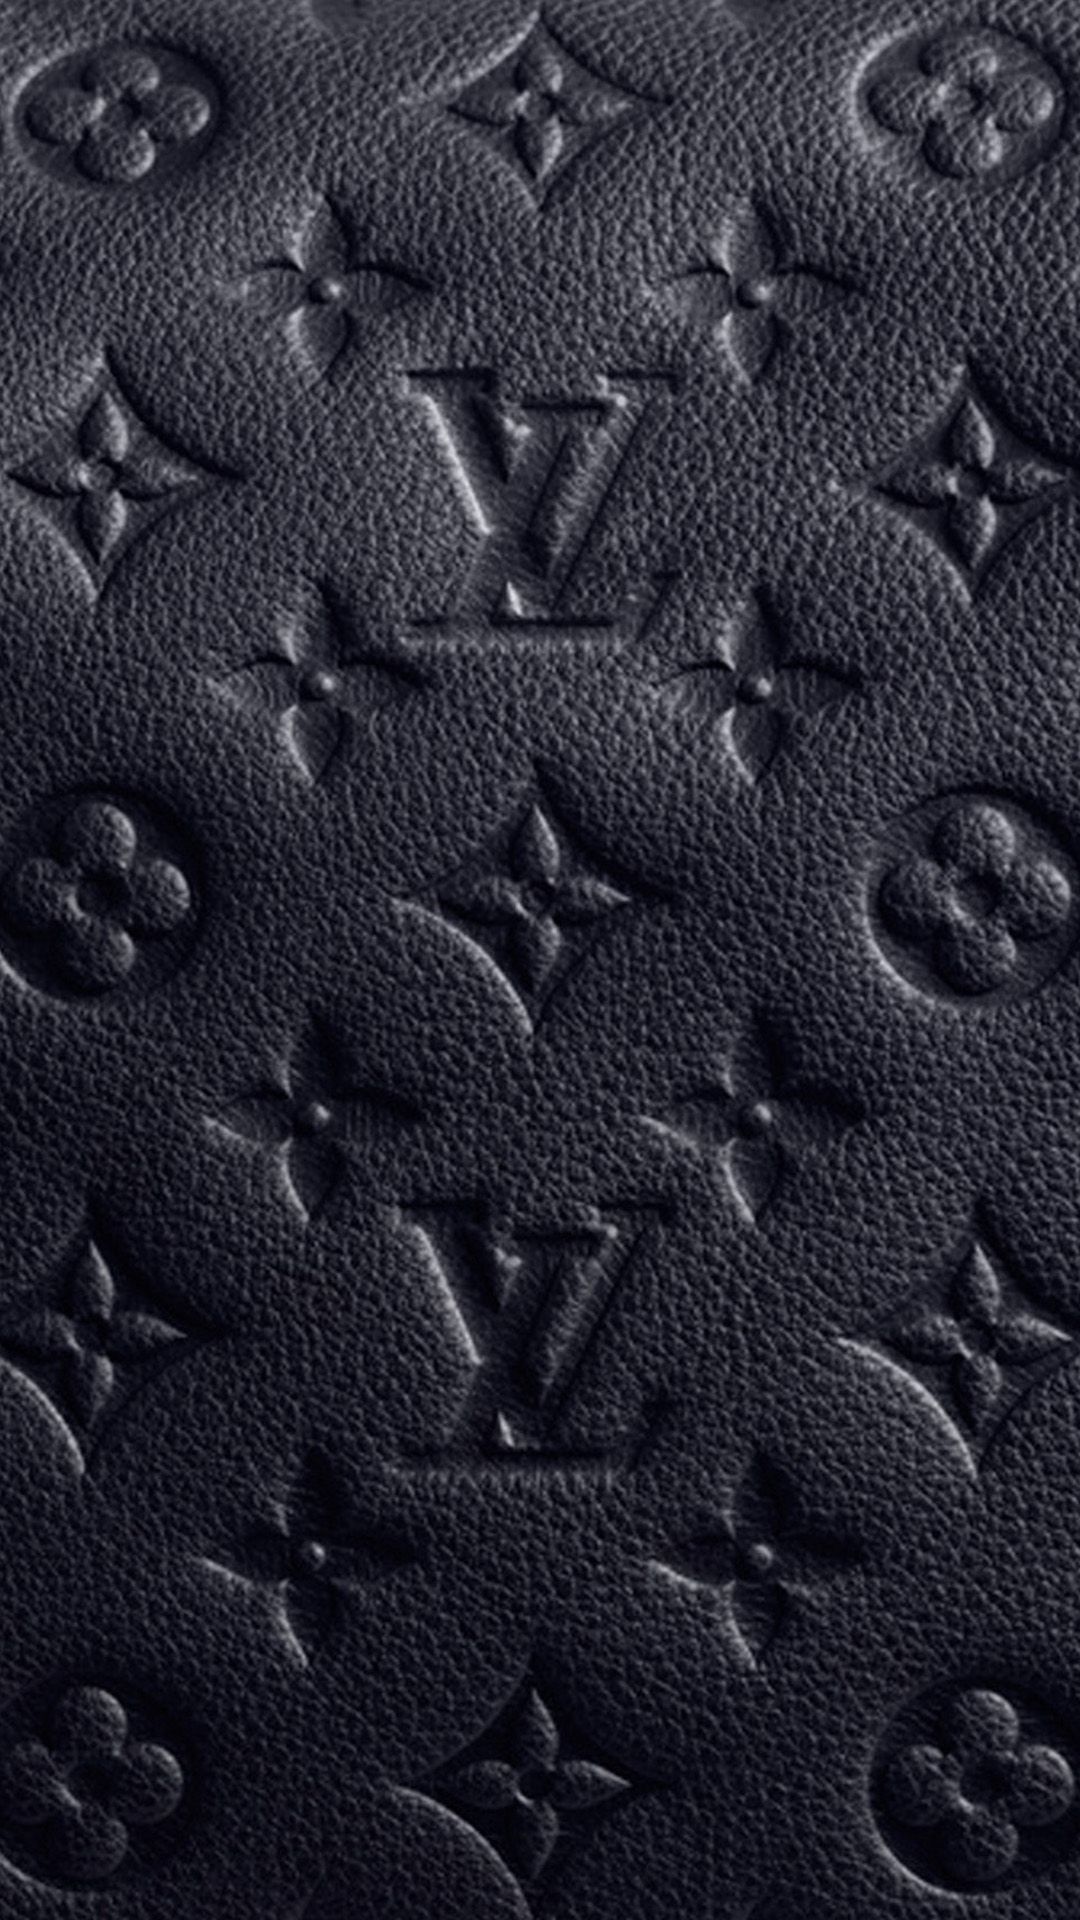 Hình nền Louis Vuitton đen là một lựa chọn sành điệu và đẳng cấp cho màn hình của bạn. Mang đến sự hoàn hảo từ sự kết hợp tinh tế giữa tông đen và đồng tiền của thương hiệu. Những chi tiết mỏng manh và cực kỳ tinh tế cho thấy phong cách thời thượng của bạn. Hãy chinh phục toàn bộ mọi người với hình nền này! Translation: The black Louis Vuitton wallpaper is a stylish and luxurious choice for your screen. It brings perfection from the elegant combination of black tone and brand icon. The delicate and extremely sophisticated details show your trendy style. Conquer everyone with this wallpaper!